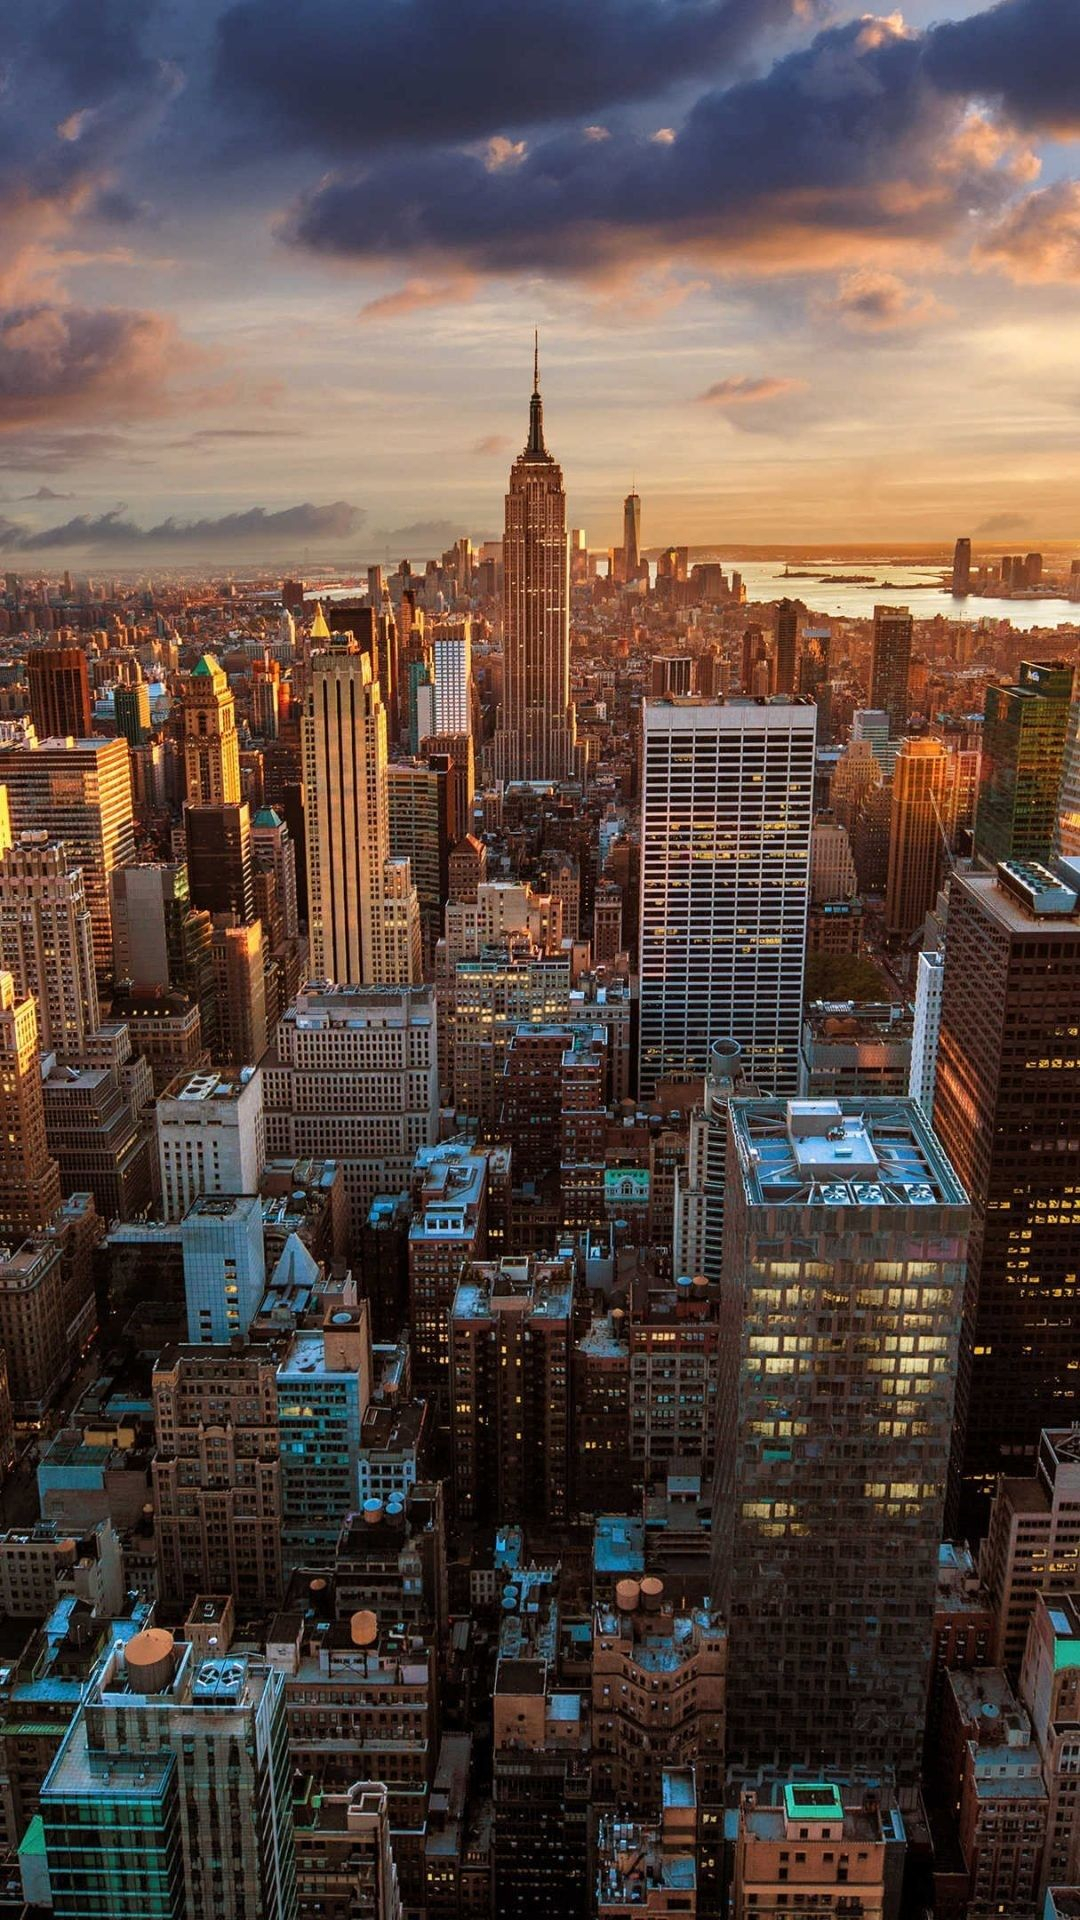 1080x1920 New York City 4K Wallpaper (38+ images) | Fotograf&Atilde;&shy;a paisaje urbano, Fotografia paisaje, Paisajes